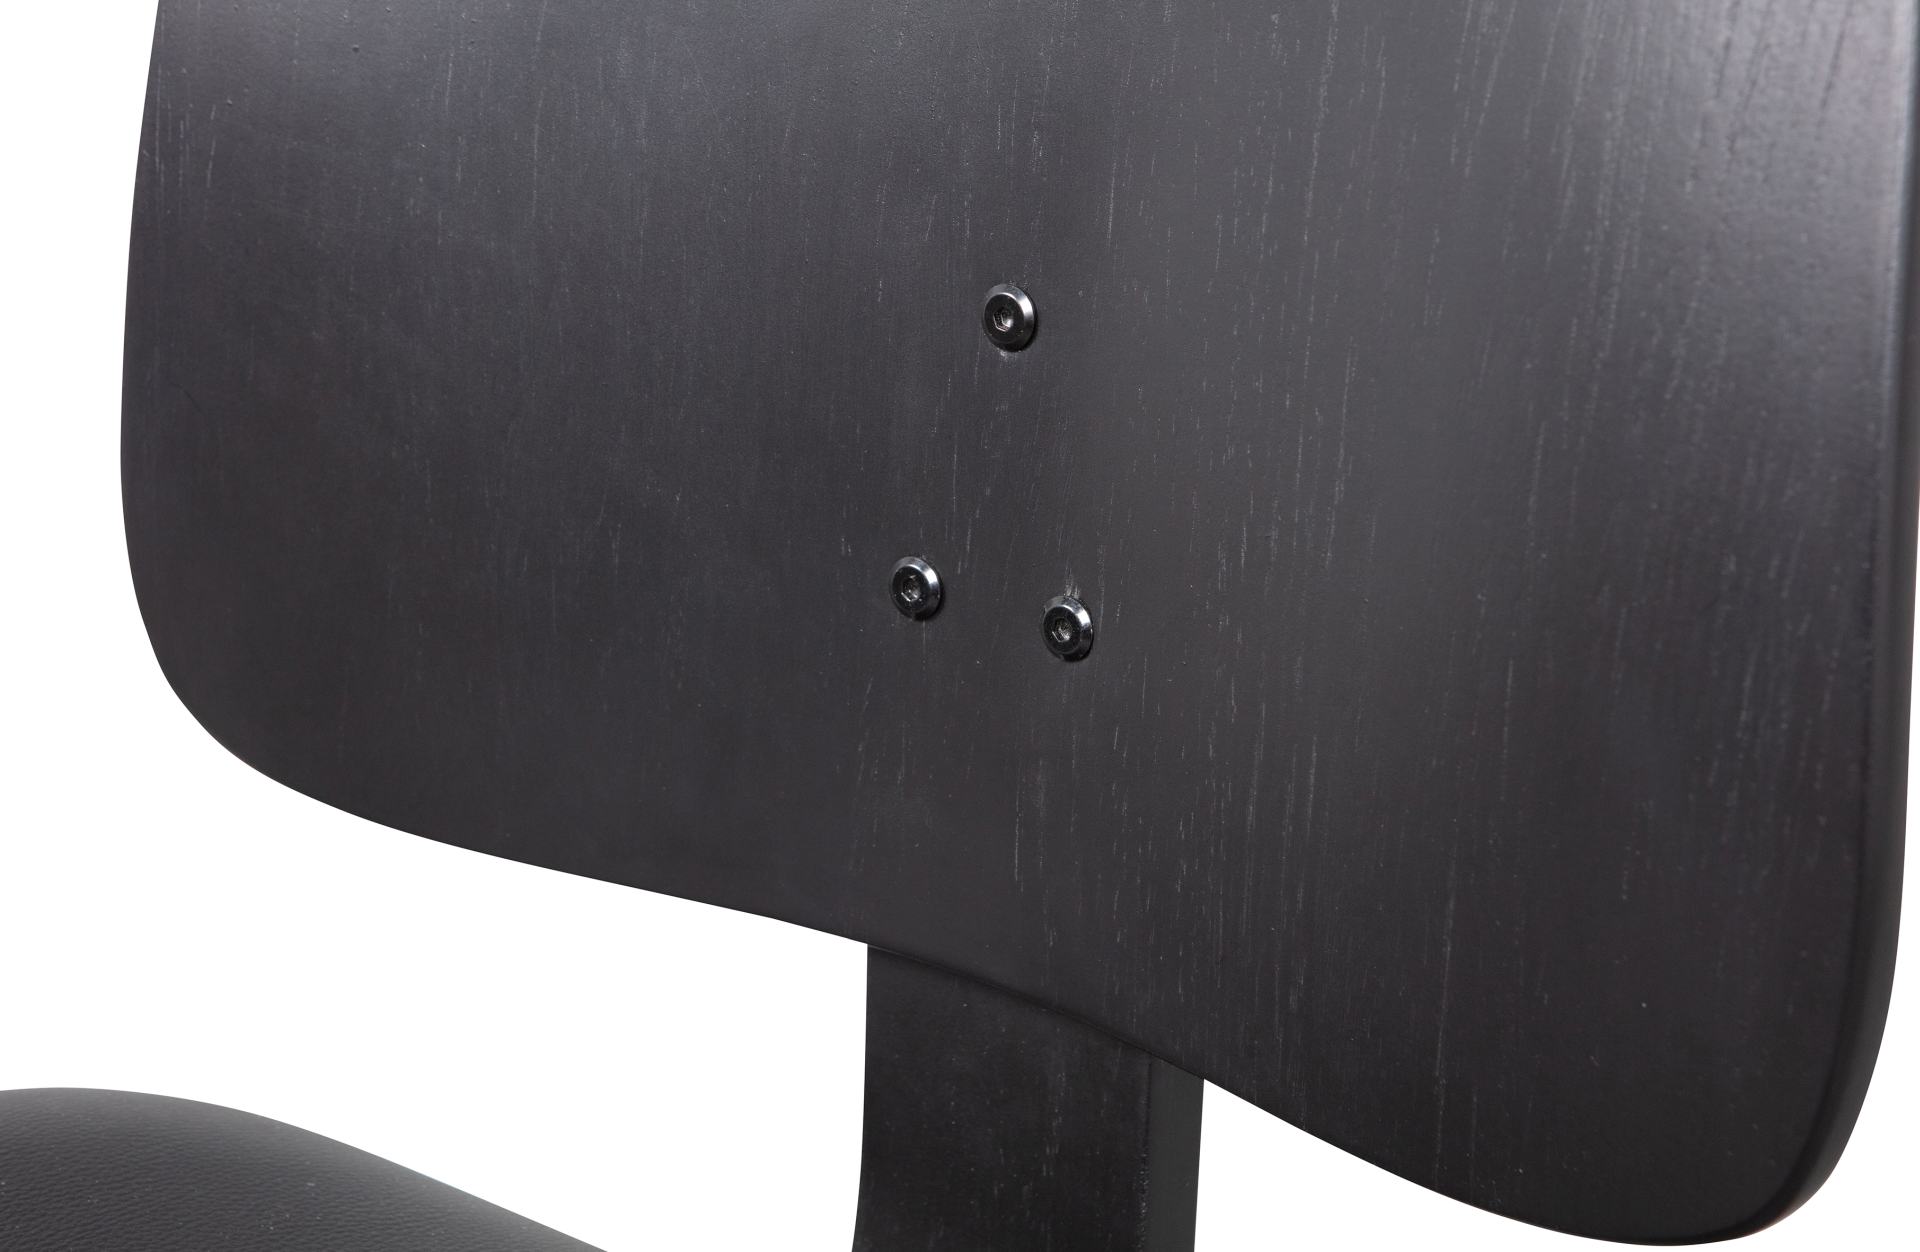 Der Esszimmerstuhl Classic überzeugt mit seinem klassischen Design. Gefertigt wurde er aus Sperrholz, welches einen schwarzen Farbton besitzt. Die Sitzfläche besteht aus Kunstleder und hat eine schwarze Farbe. Die Sitzhöhe beträgt 48 cm.